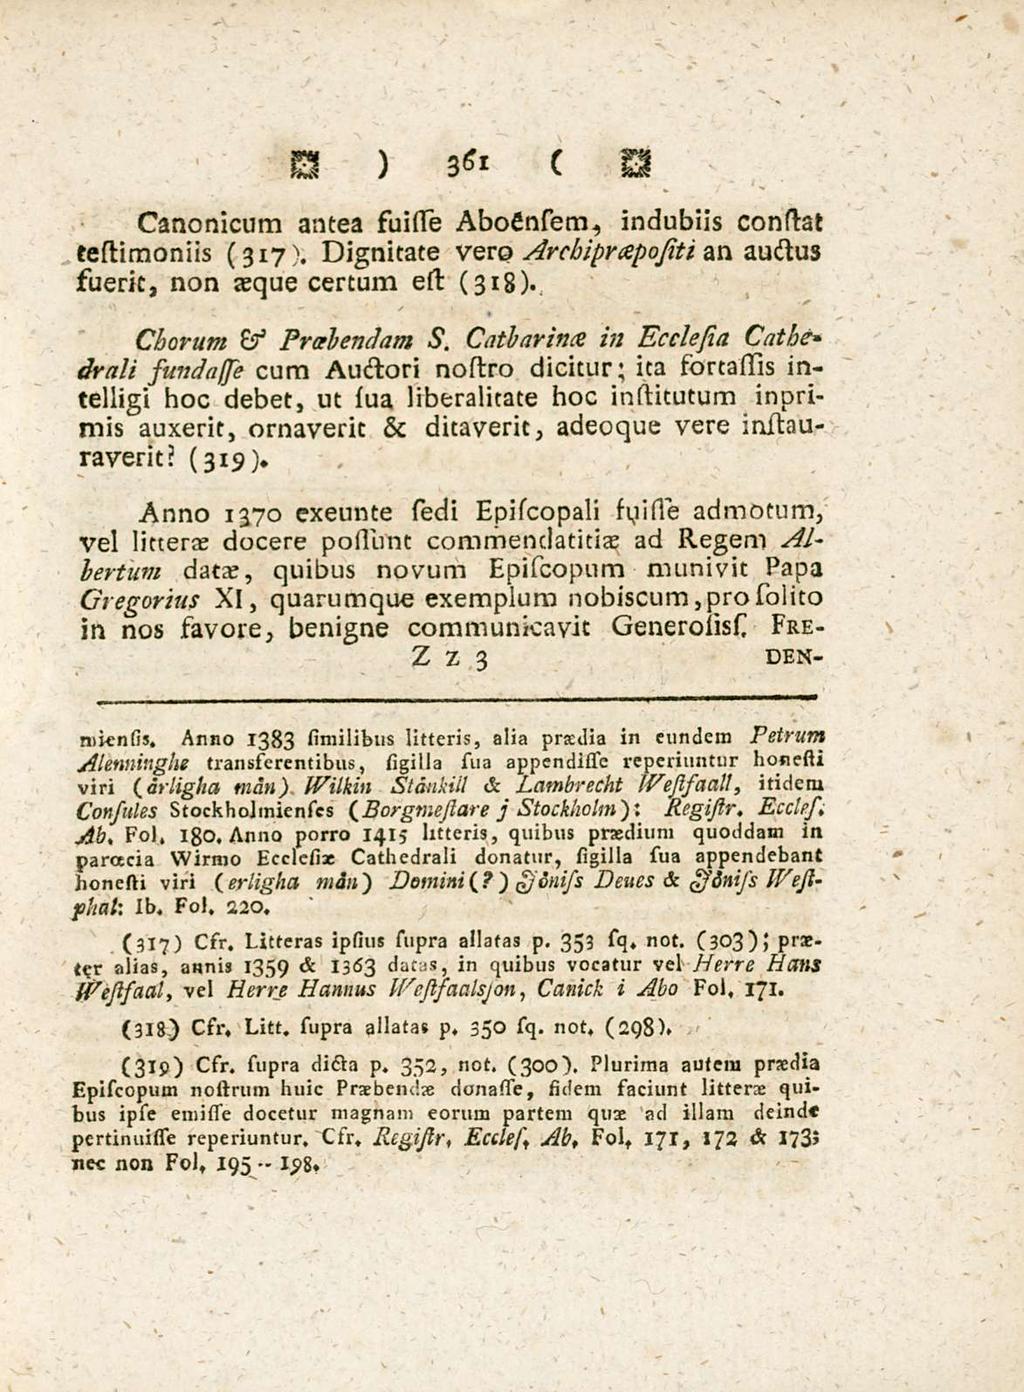 361 Canonicum antea suisse AboCnsem, indubiis constat testimoniis (317). Dignitate vero Arcbiprapojiti an auctus fuerit, non aeque certum est (318). Chorum & Praebendam s.